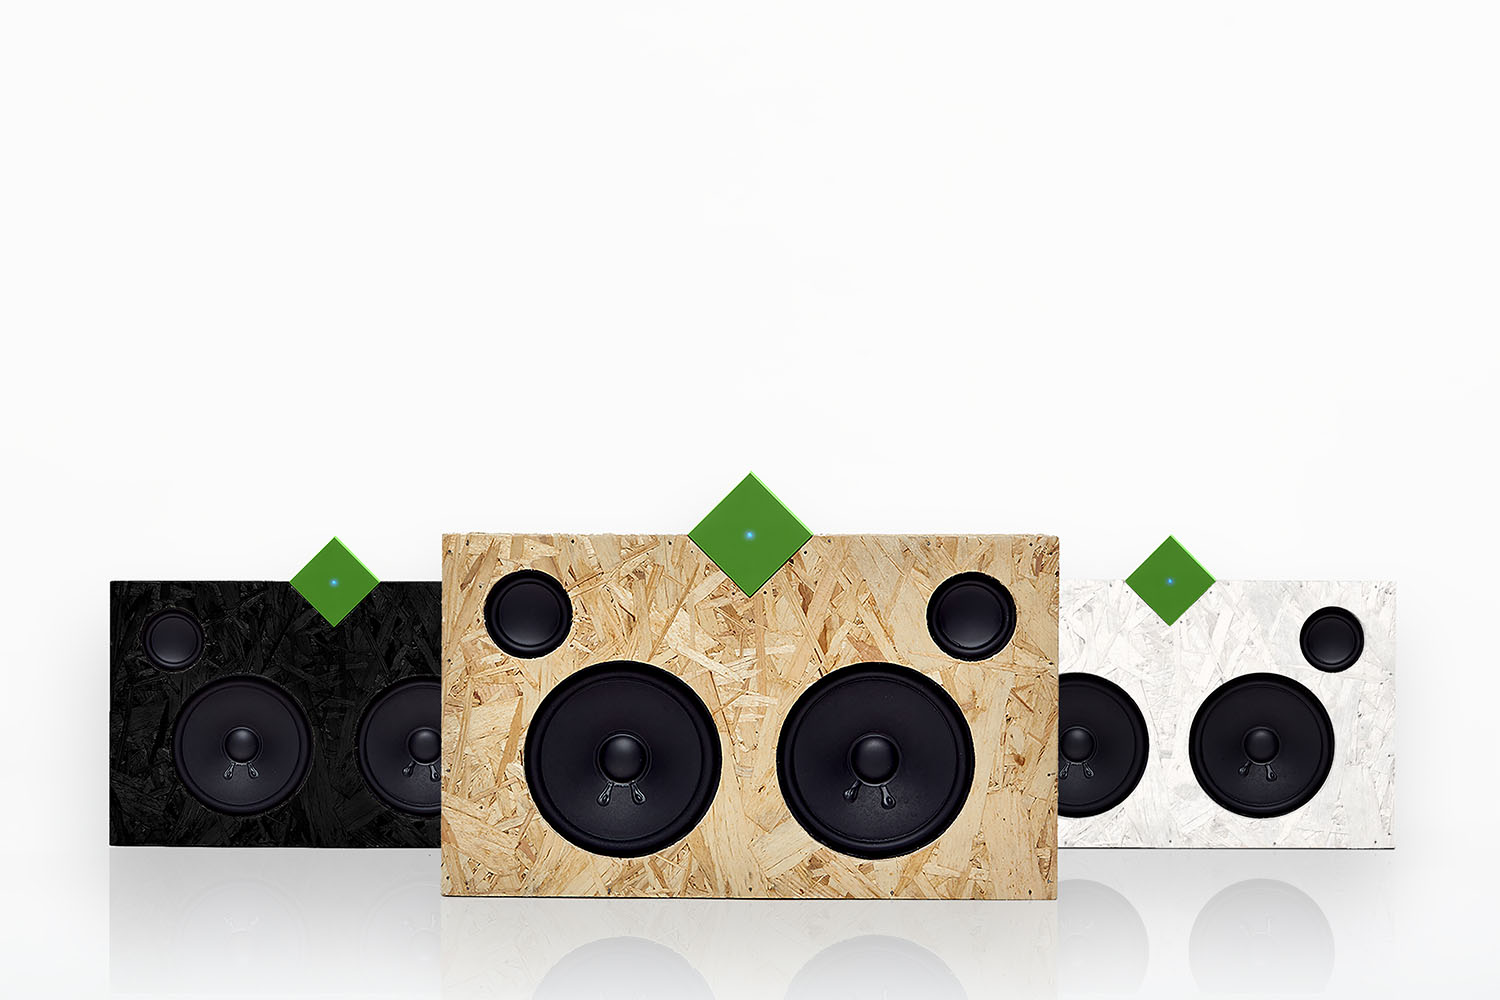 vamp stereo speaker launch on kickstarter the 3